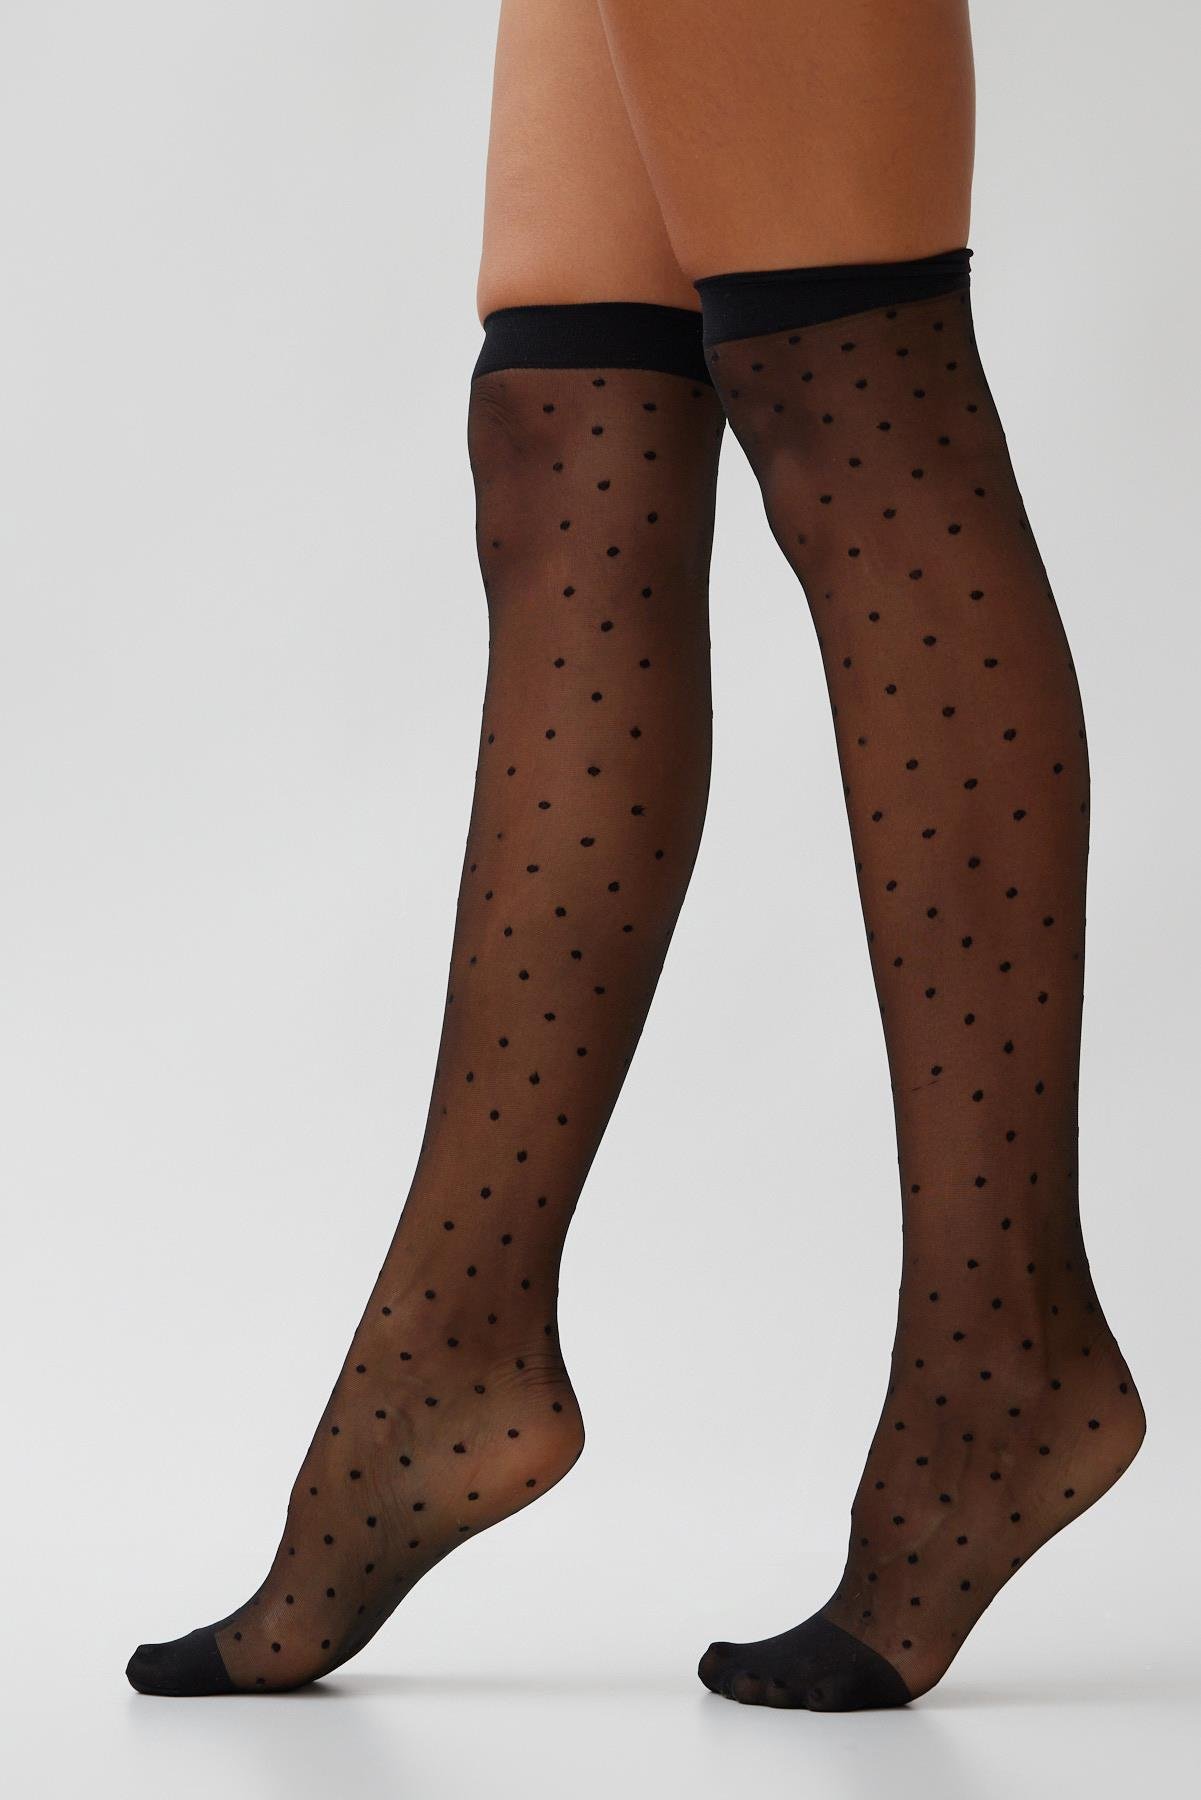 Kadın Uzun ve Diz Altı Çorap Modelleri l Calzedonia